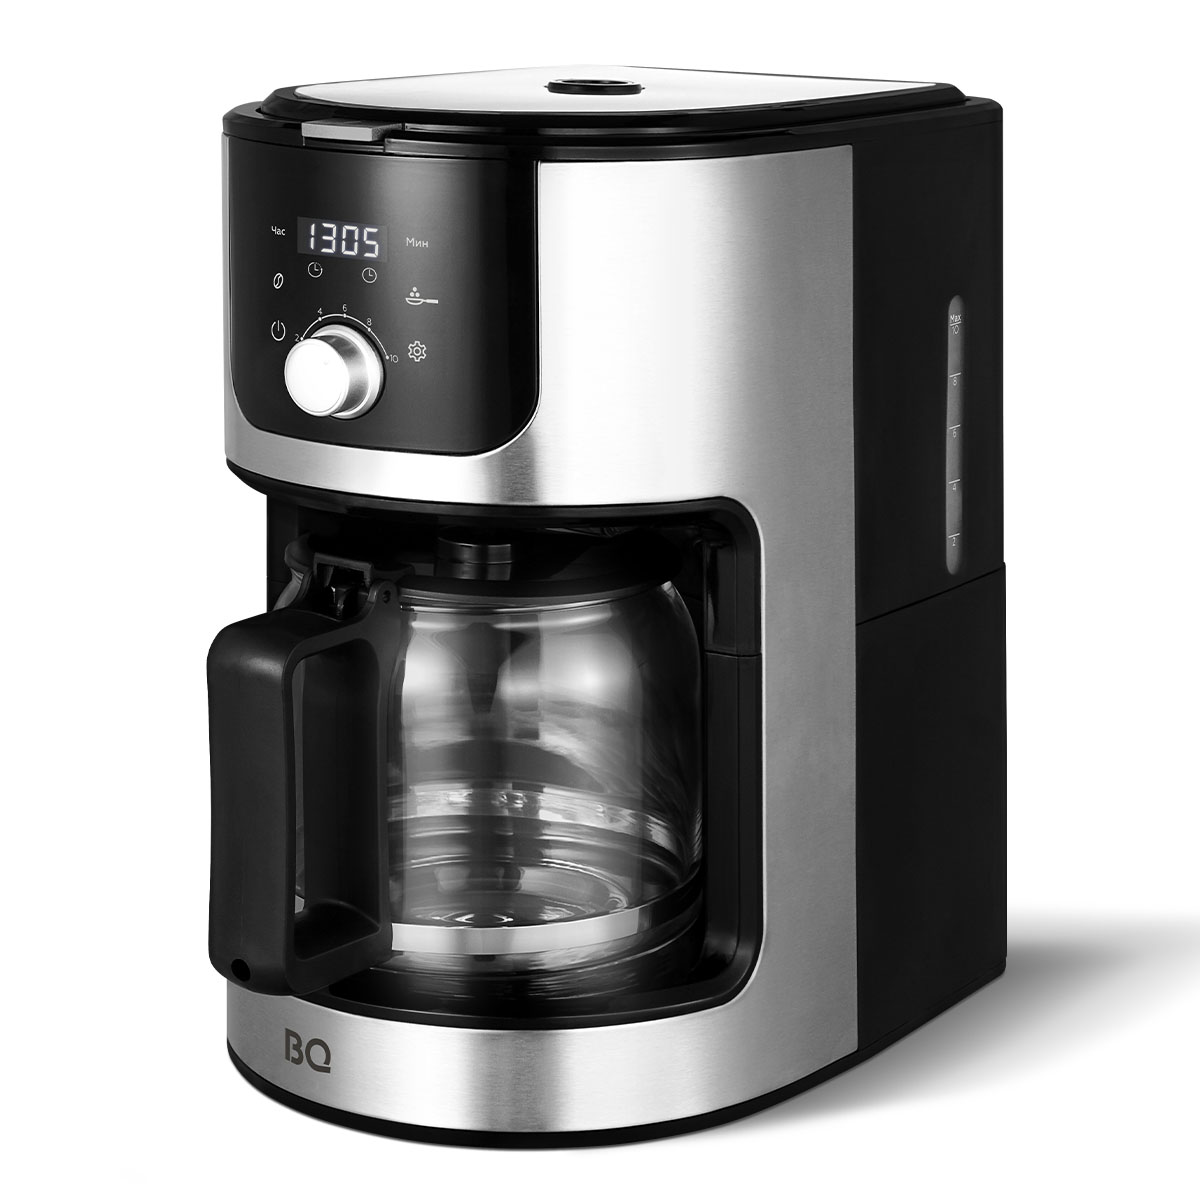 Кофеварка капельного типа BQ CM1010 серебристый, черный кофеварка капельная tefal cm361838 серебристый